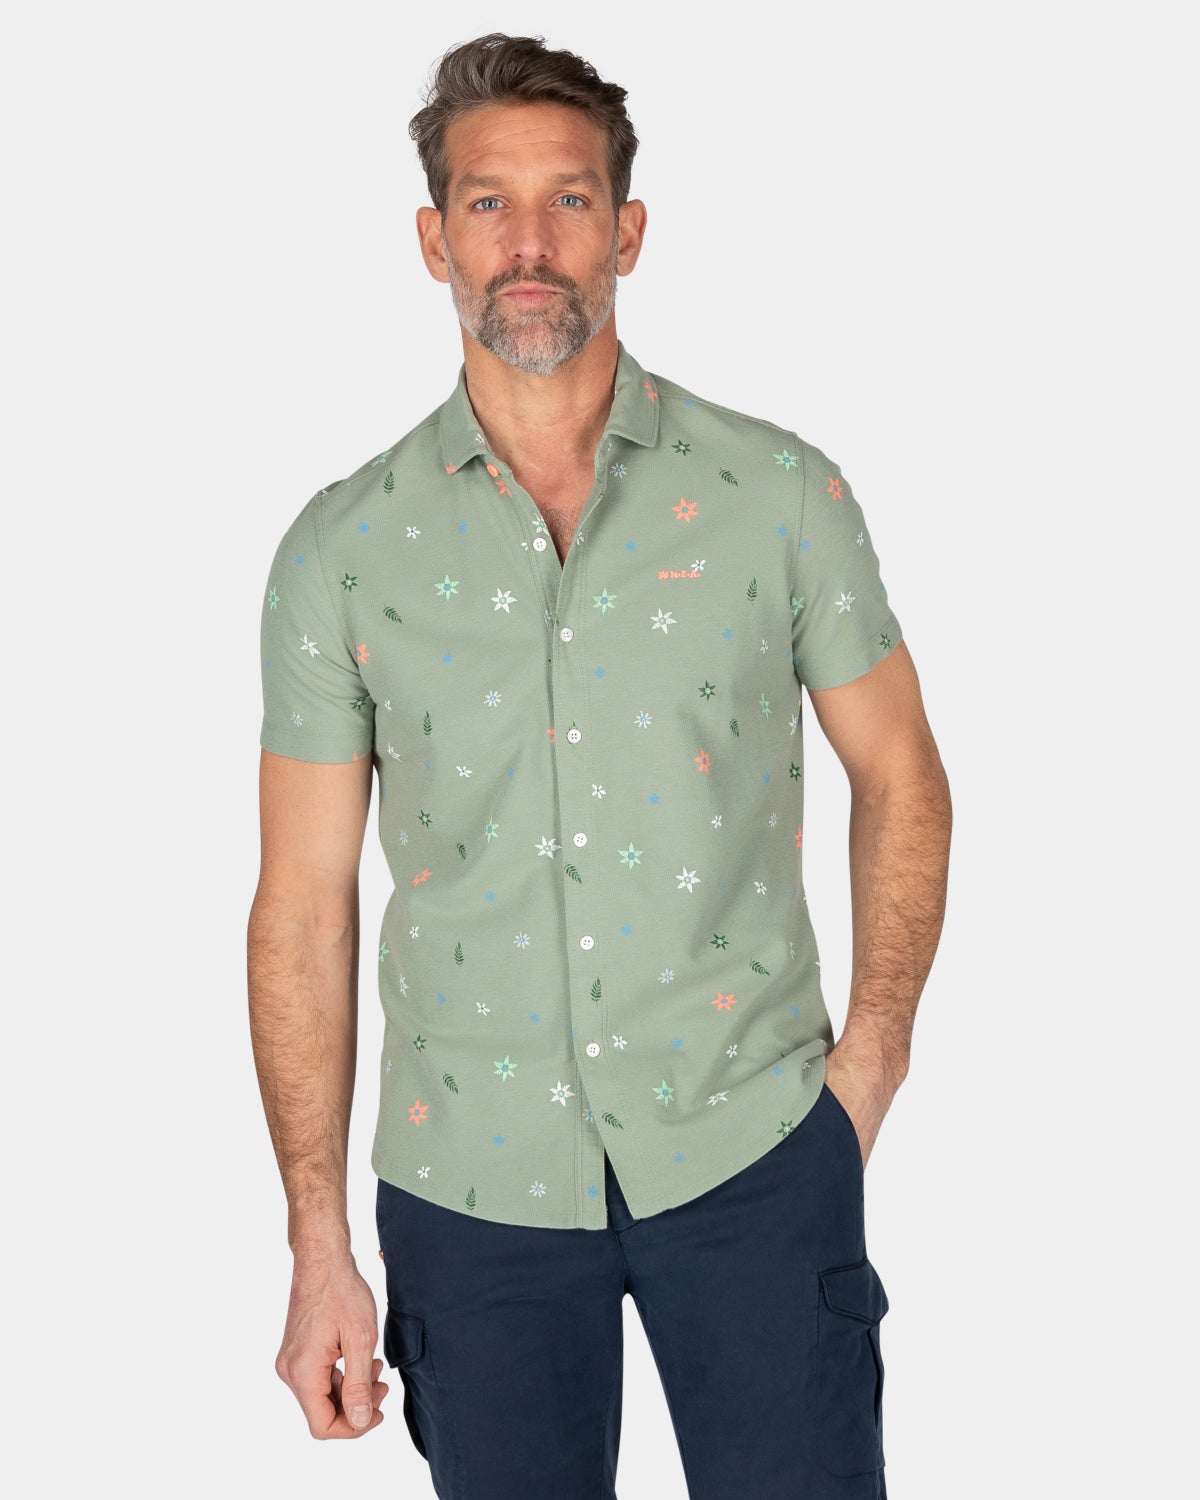 Green shirt with flowerprint - Mellow Army